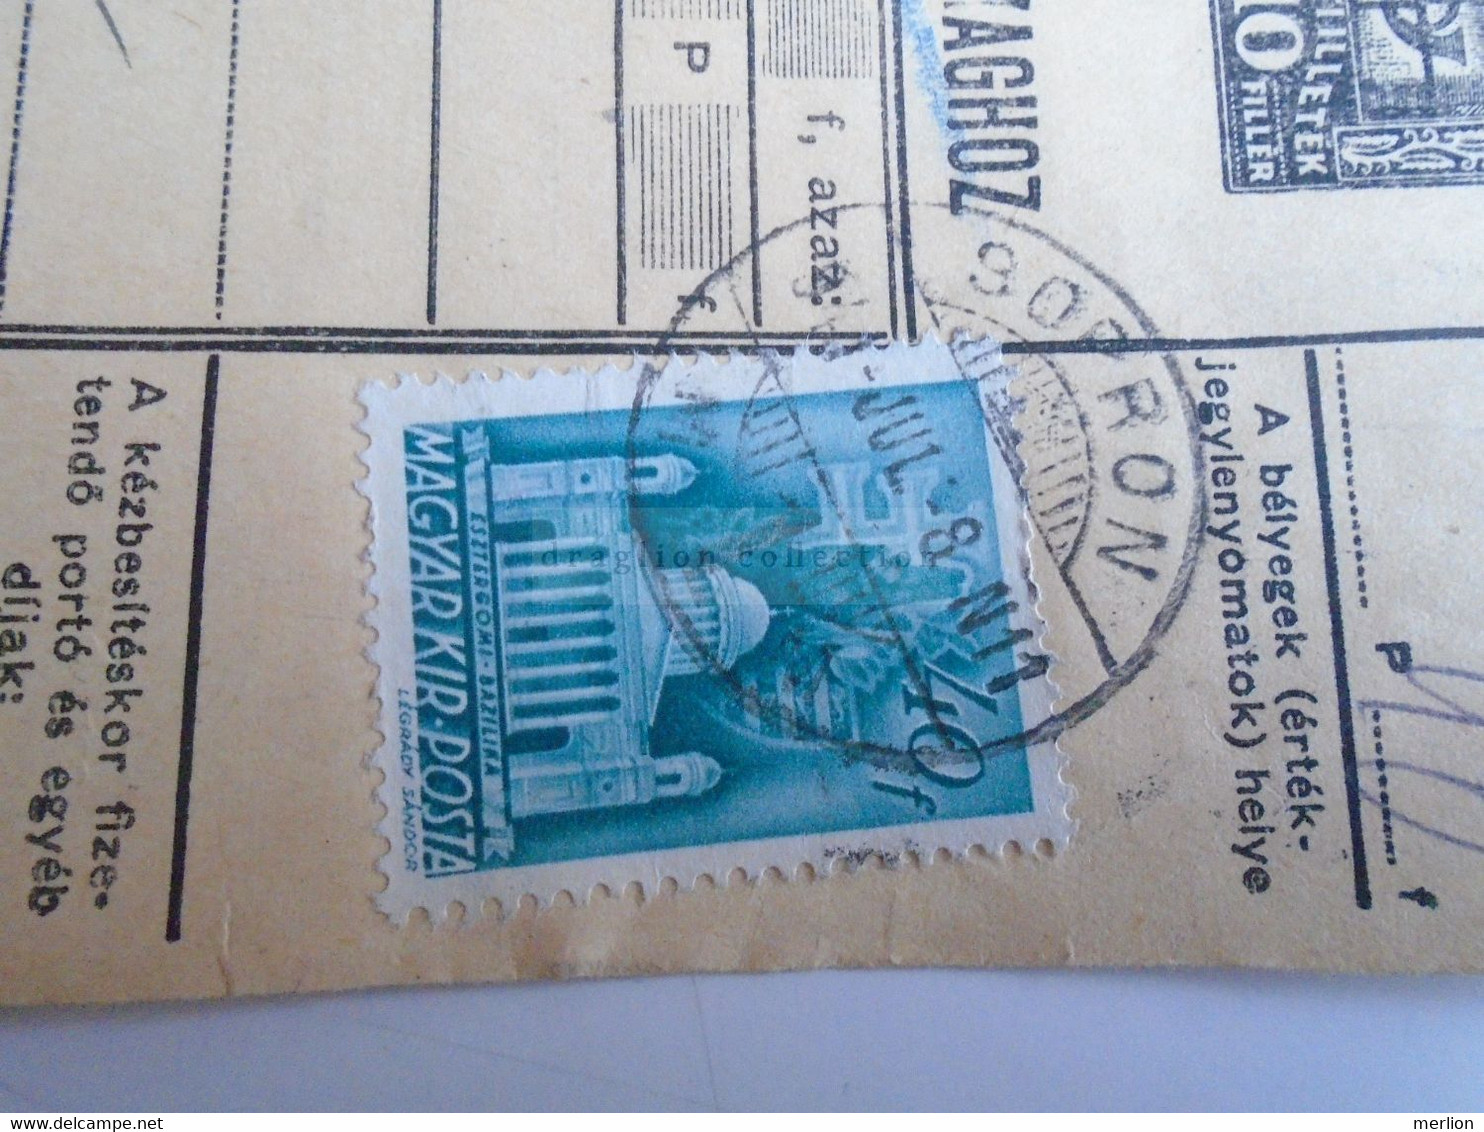 D187437   Parcel Card  (cut) Hungary 1941 SOPRON  -Kapuvár - Parcel Post